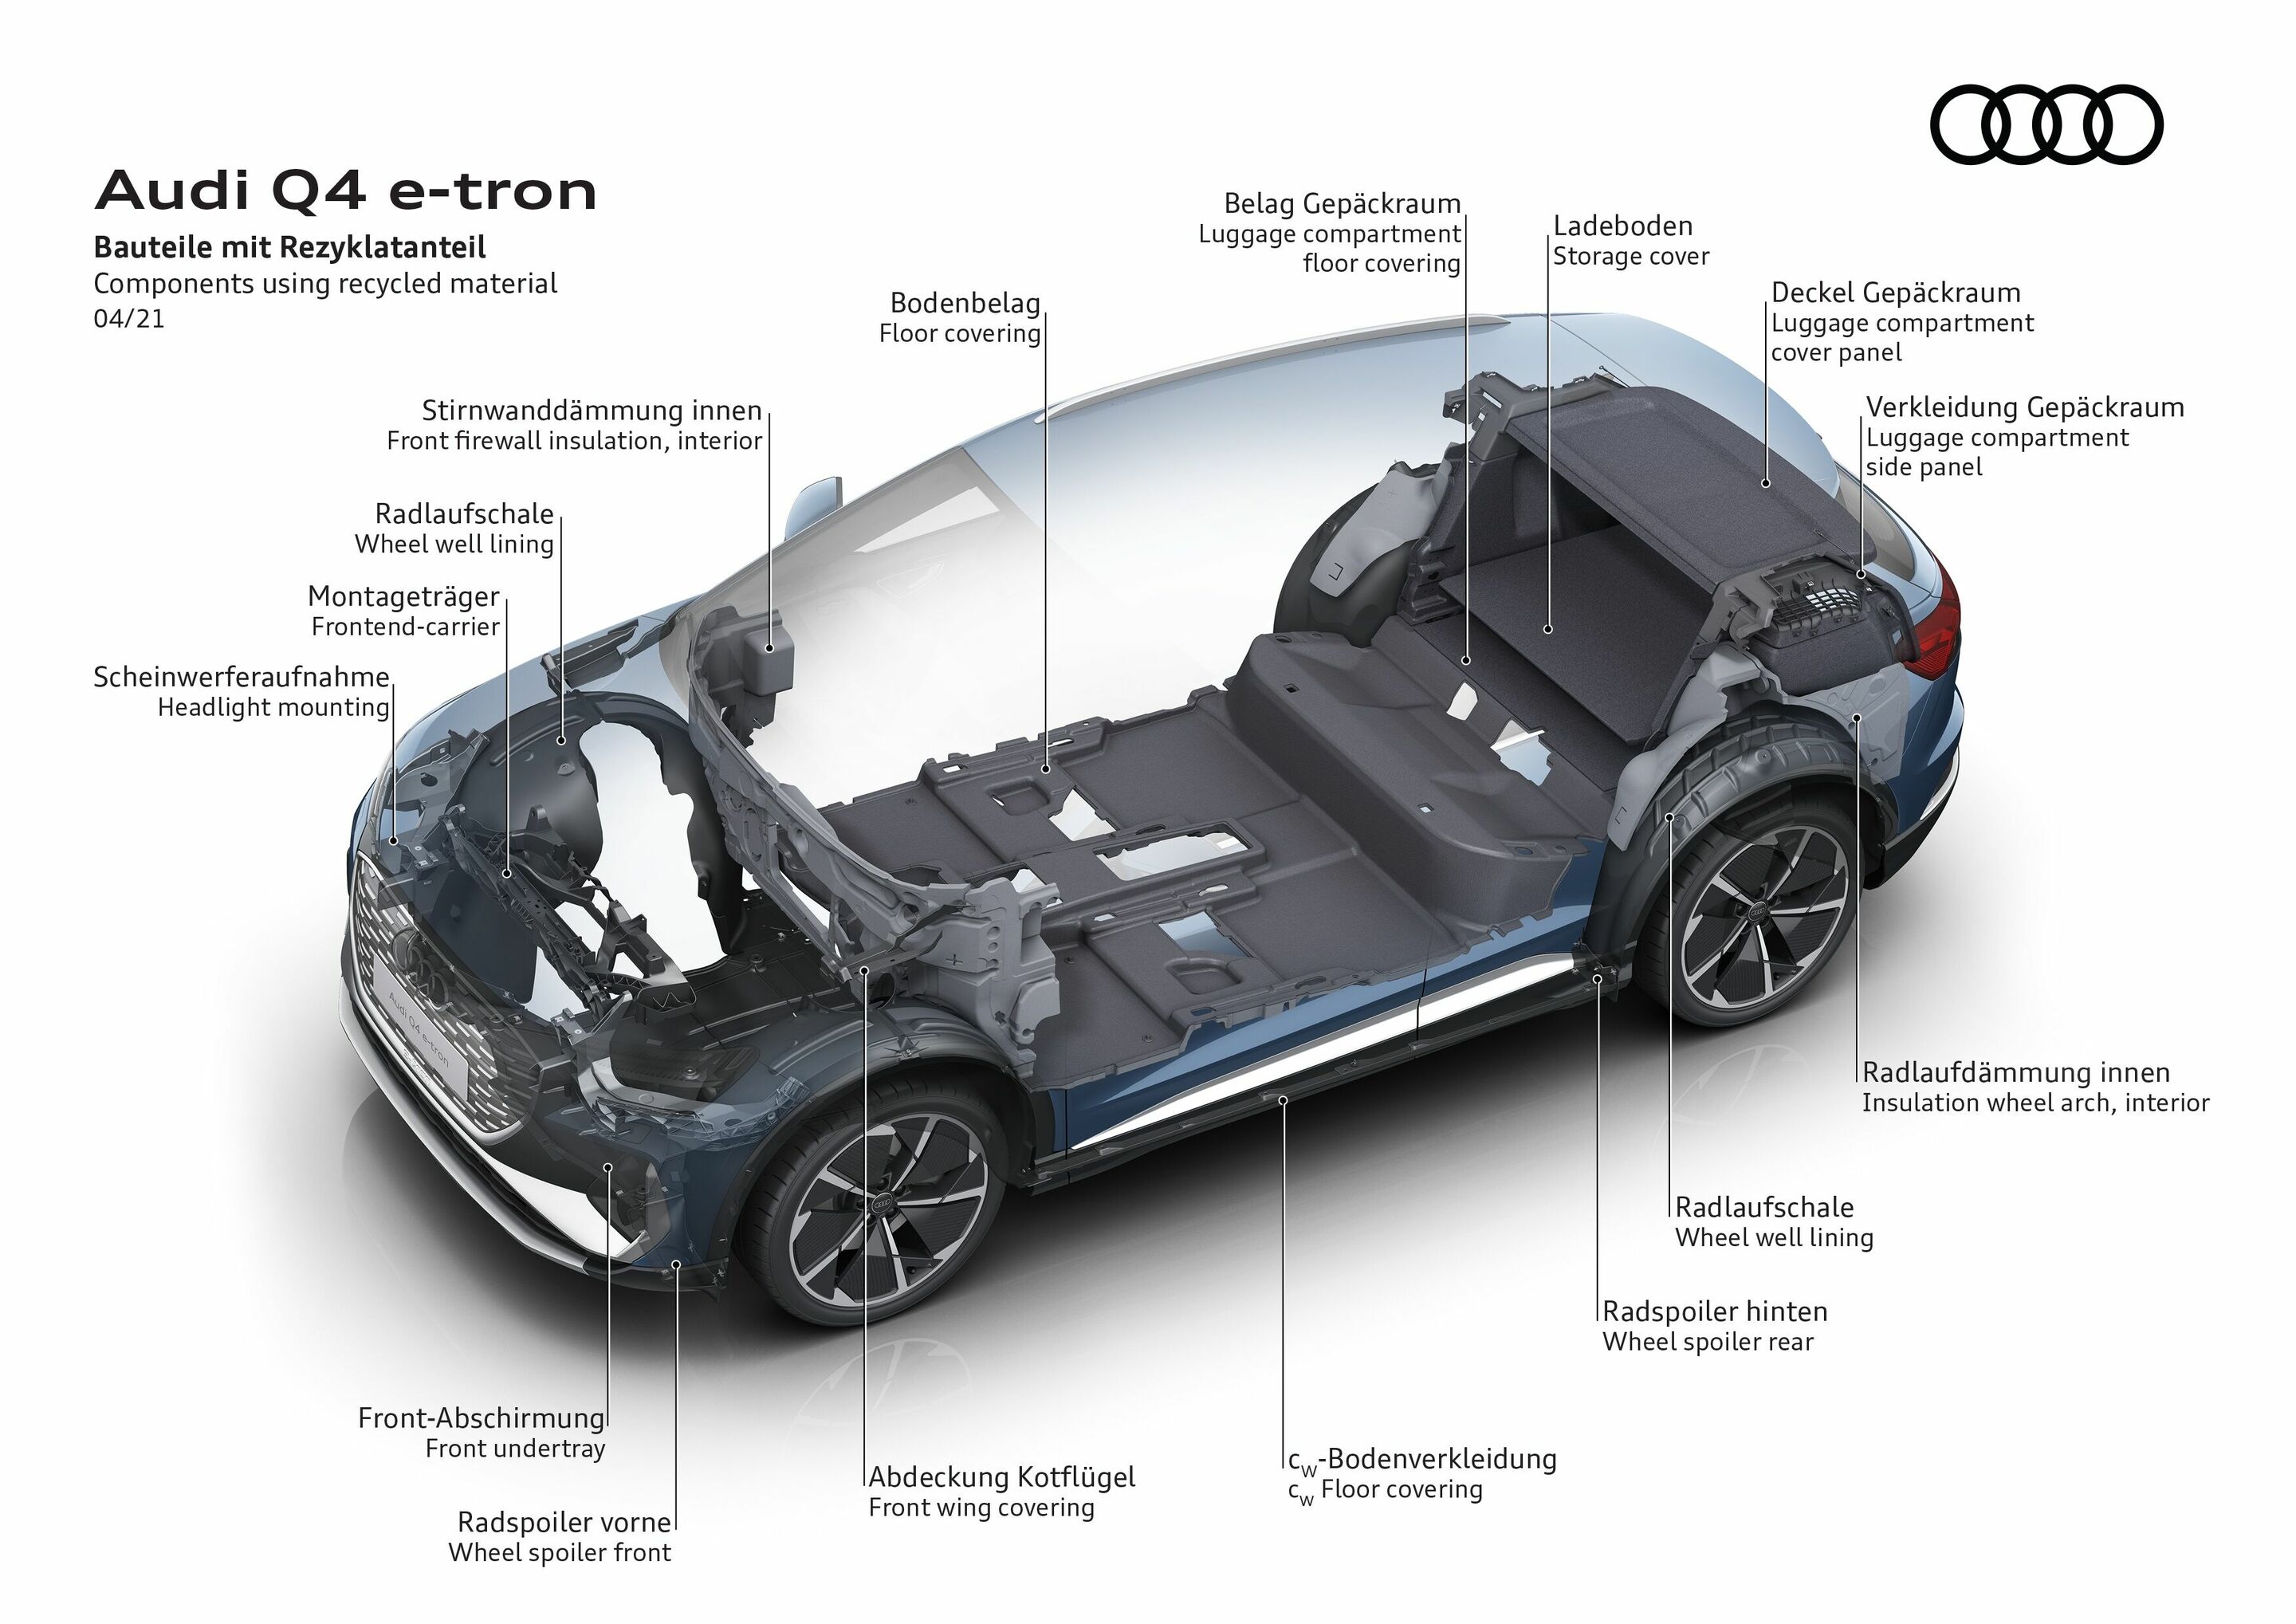 Audi Q4 e-tron  Audi MediaCenter